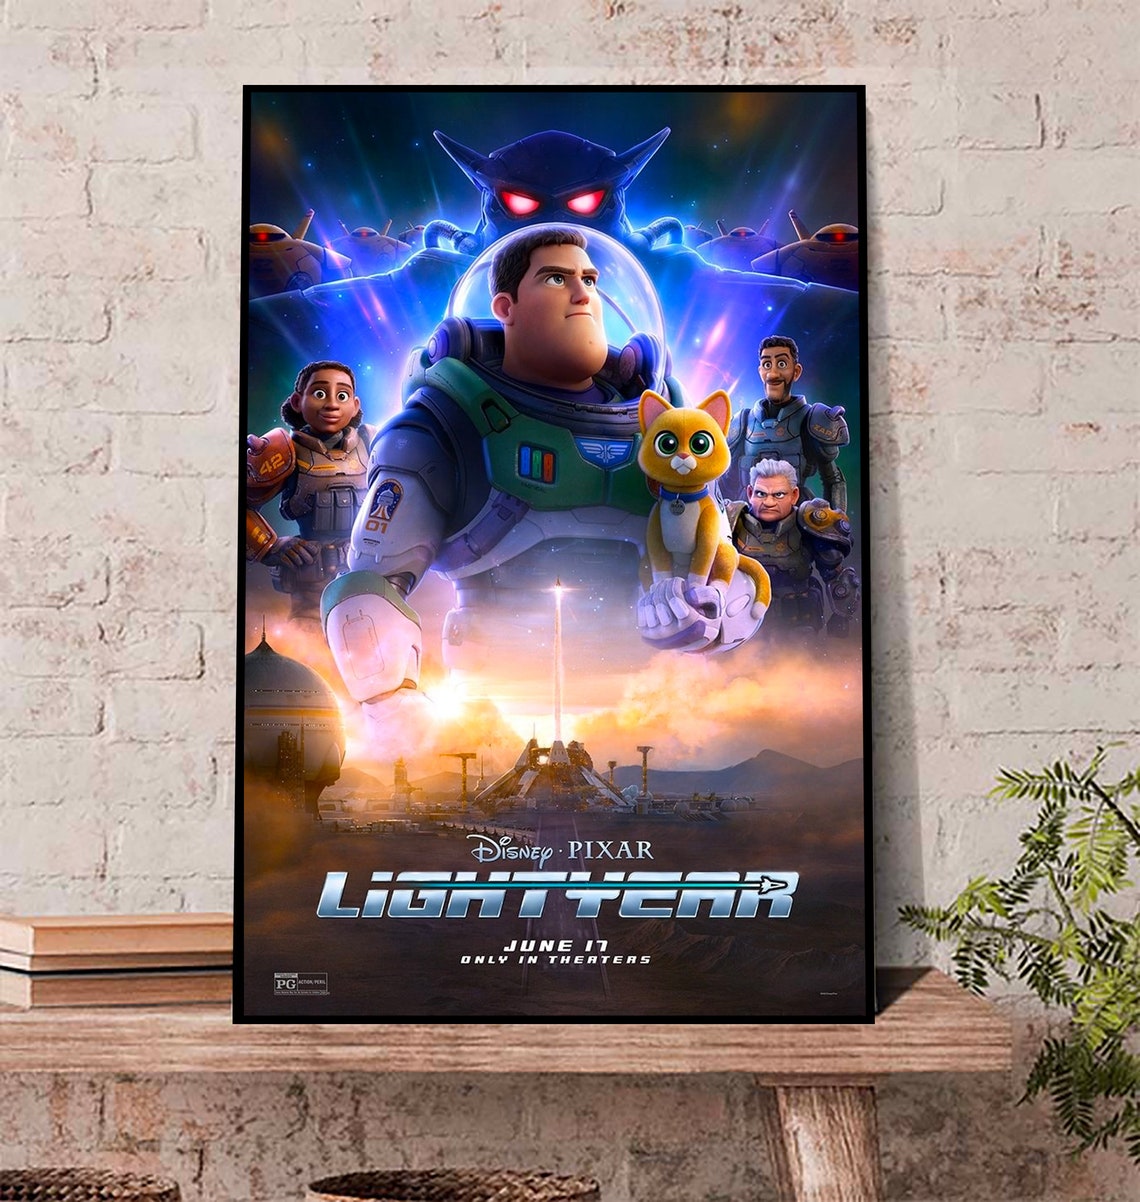 Lightyear Poster, New Lightyear Poster, Lightyear Buzz Poster, Lightyear Gift For Fan Poster 